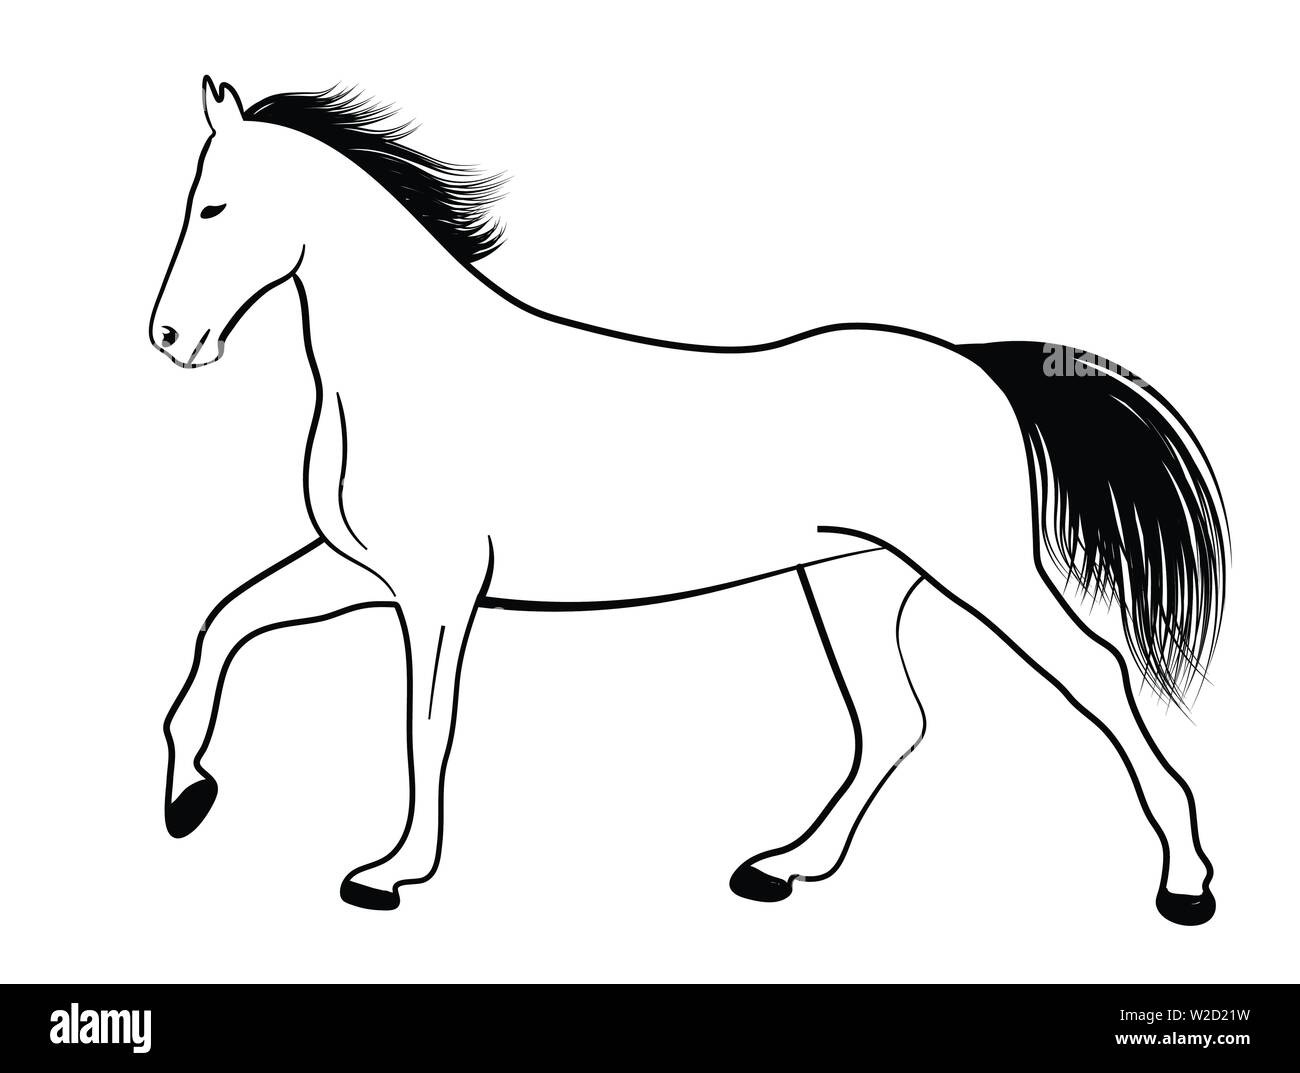 Horse line Art Illustration - Vektor Stock Vektor